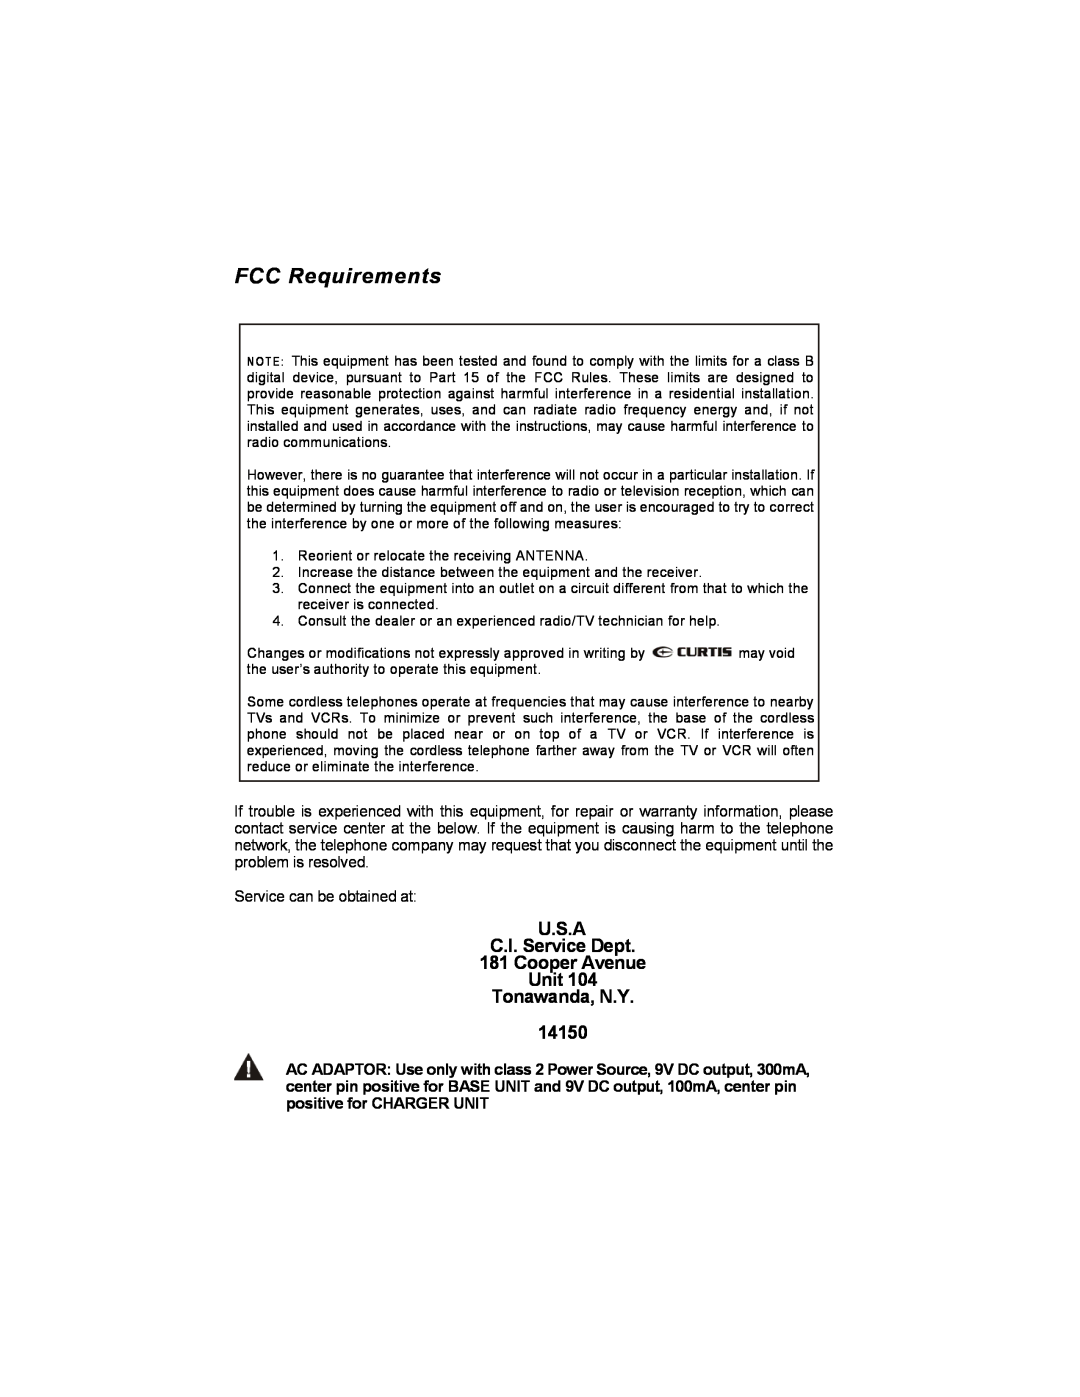 Curtis TC595 owner manual FCC Requirements, U.S.A C.I. Service Dept 181 Cooper Avenue Unit Tonawanda, N.Y 14150 